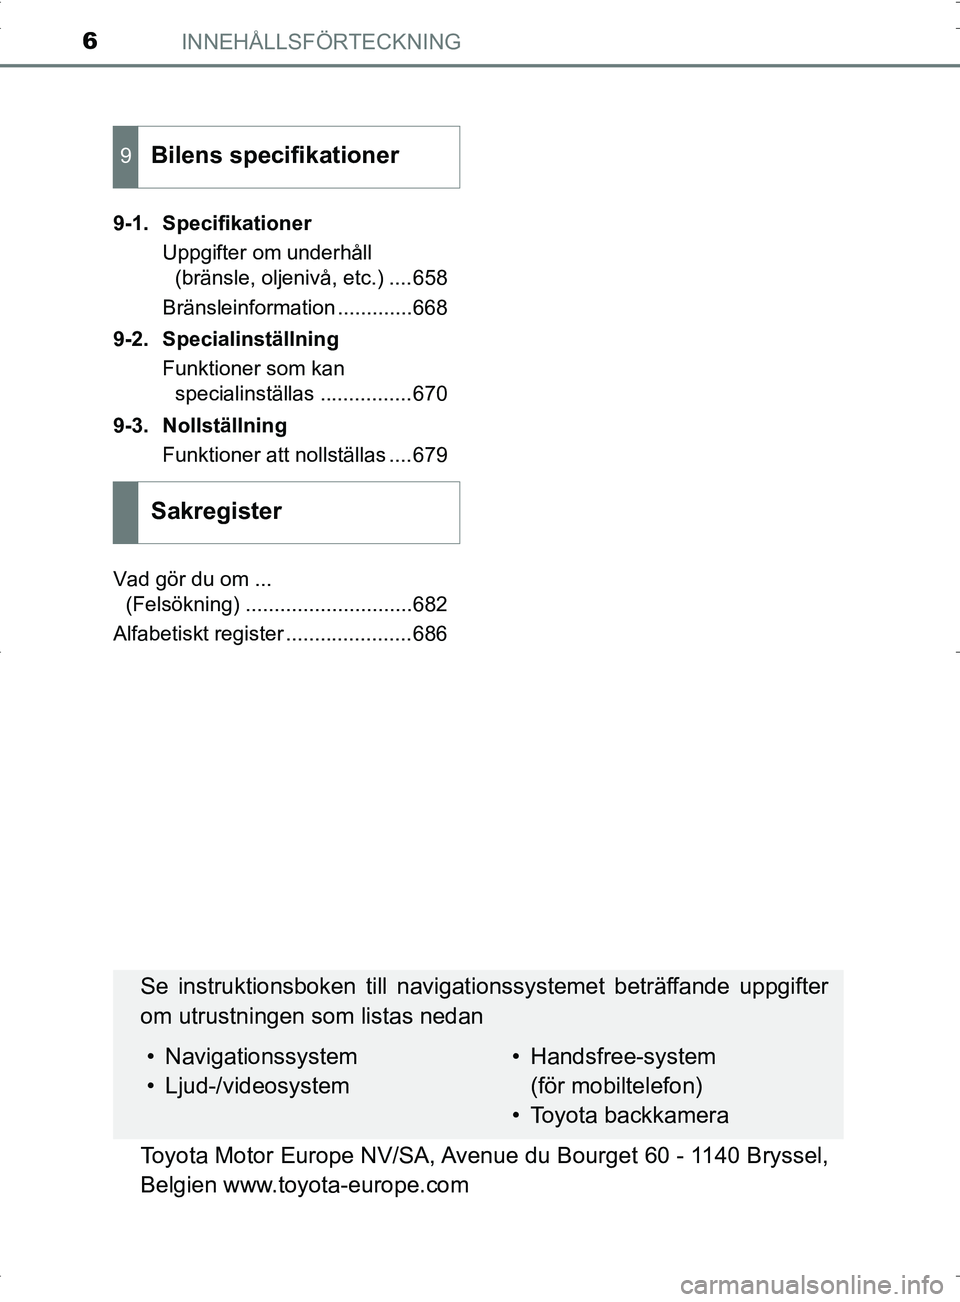 TOYOTA PRIUS PLUG-IN HYBRID 2017  Bruksanvisningar (in Swedish) INNEHÅLLSFÖRTECKNING6
OM47A89SE9-1. Specifikationer
Uppgifter om underhåll (bränsle, oljenivå, etc.) ....658
Bränsleinformation .............668
9-2. Specialinställning Funktioner som kan speci